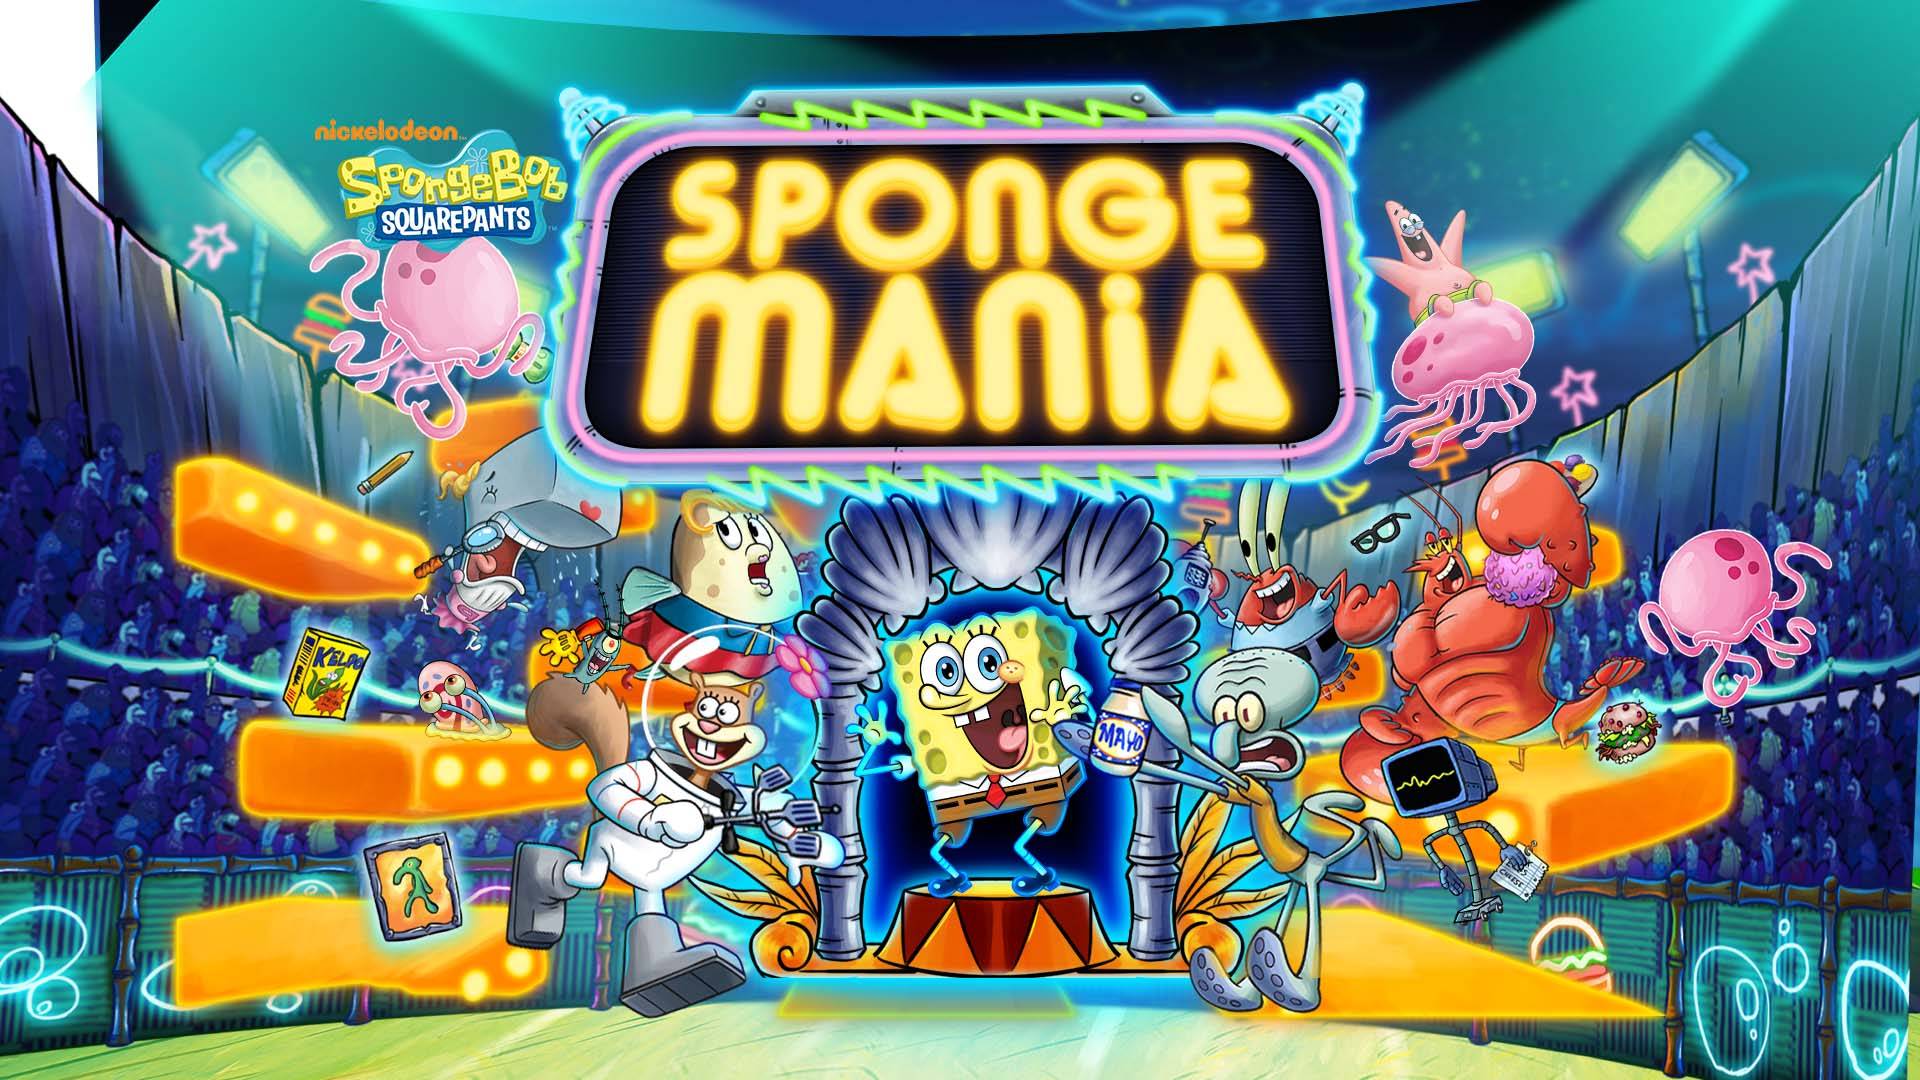 SpongeMania - SpongeBob SquarePants Game